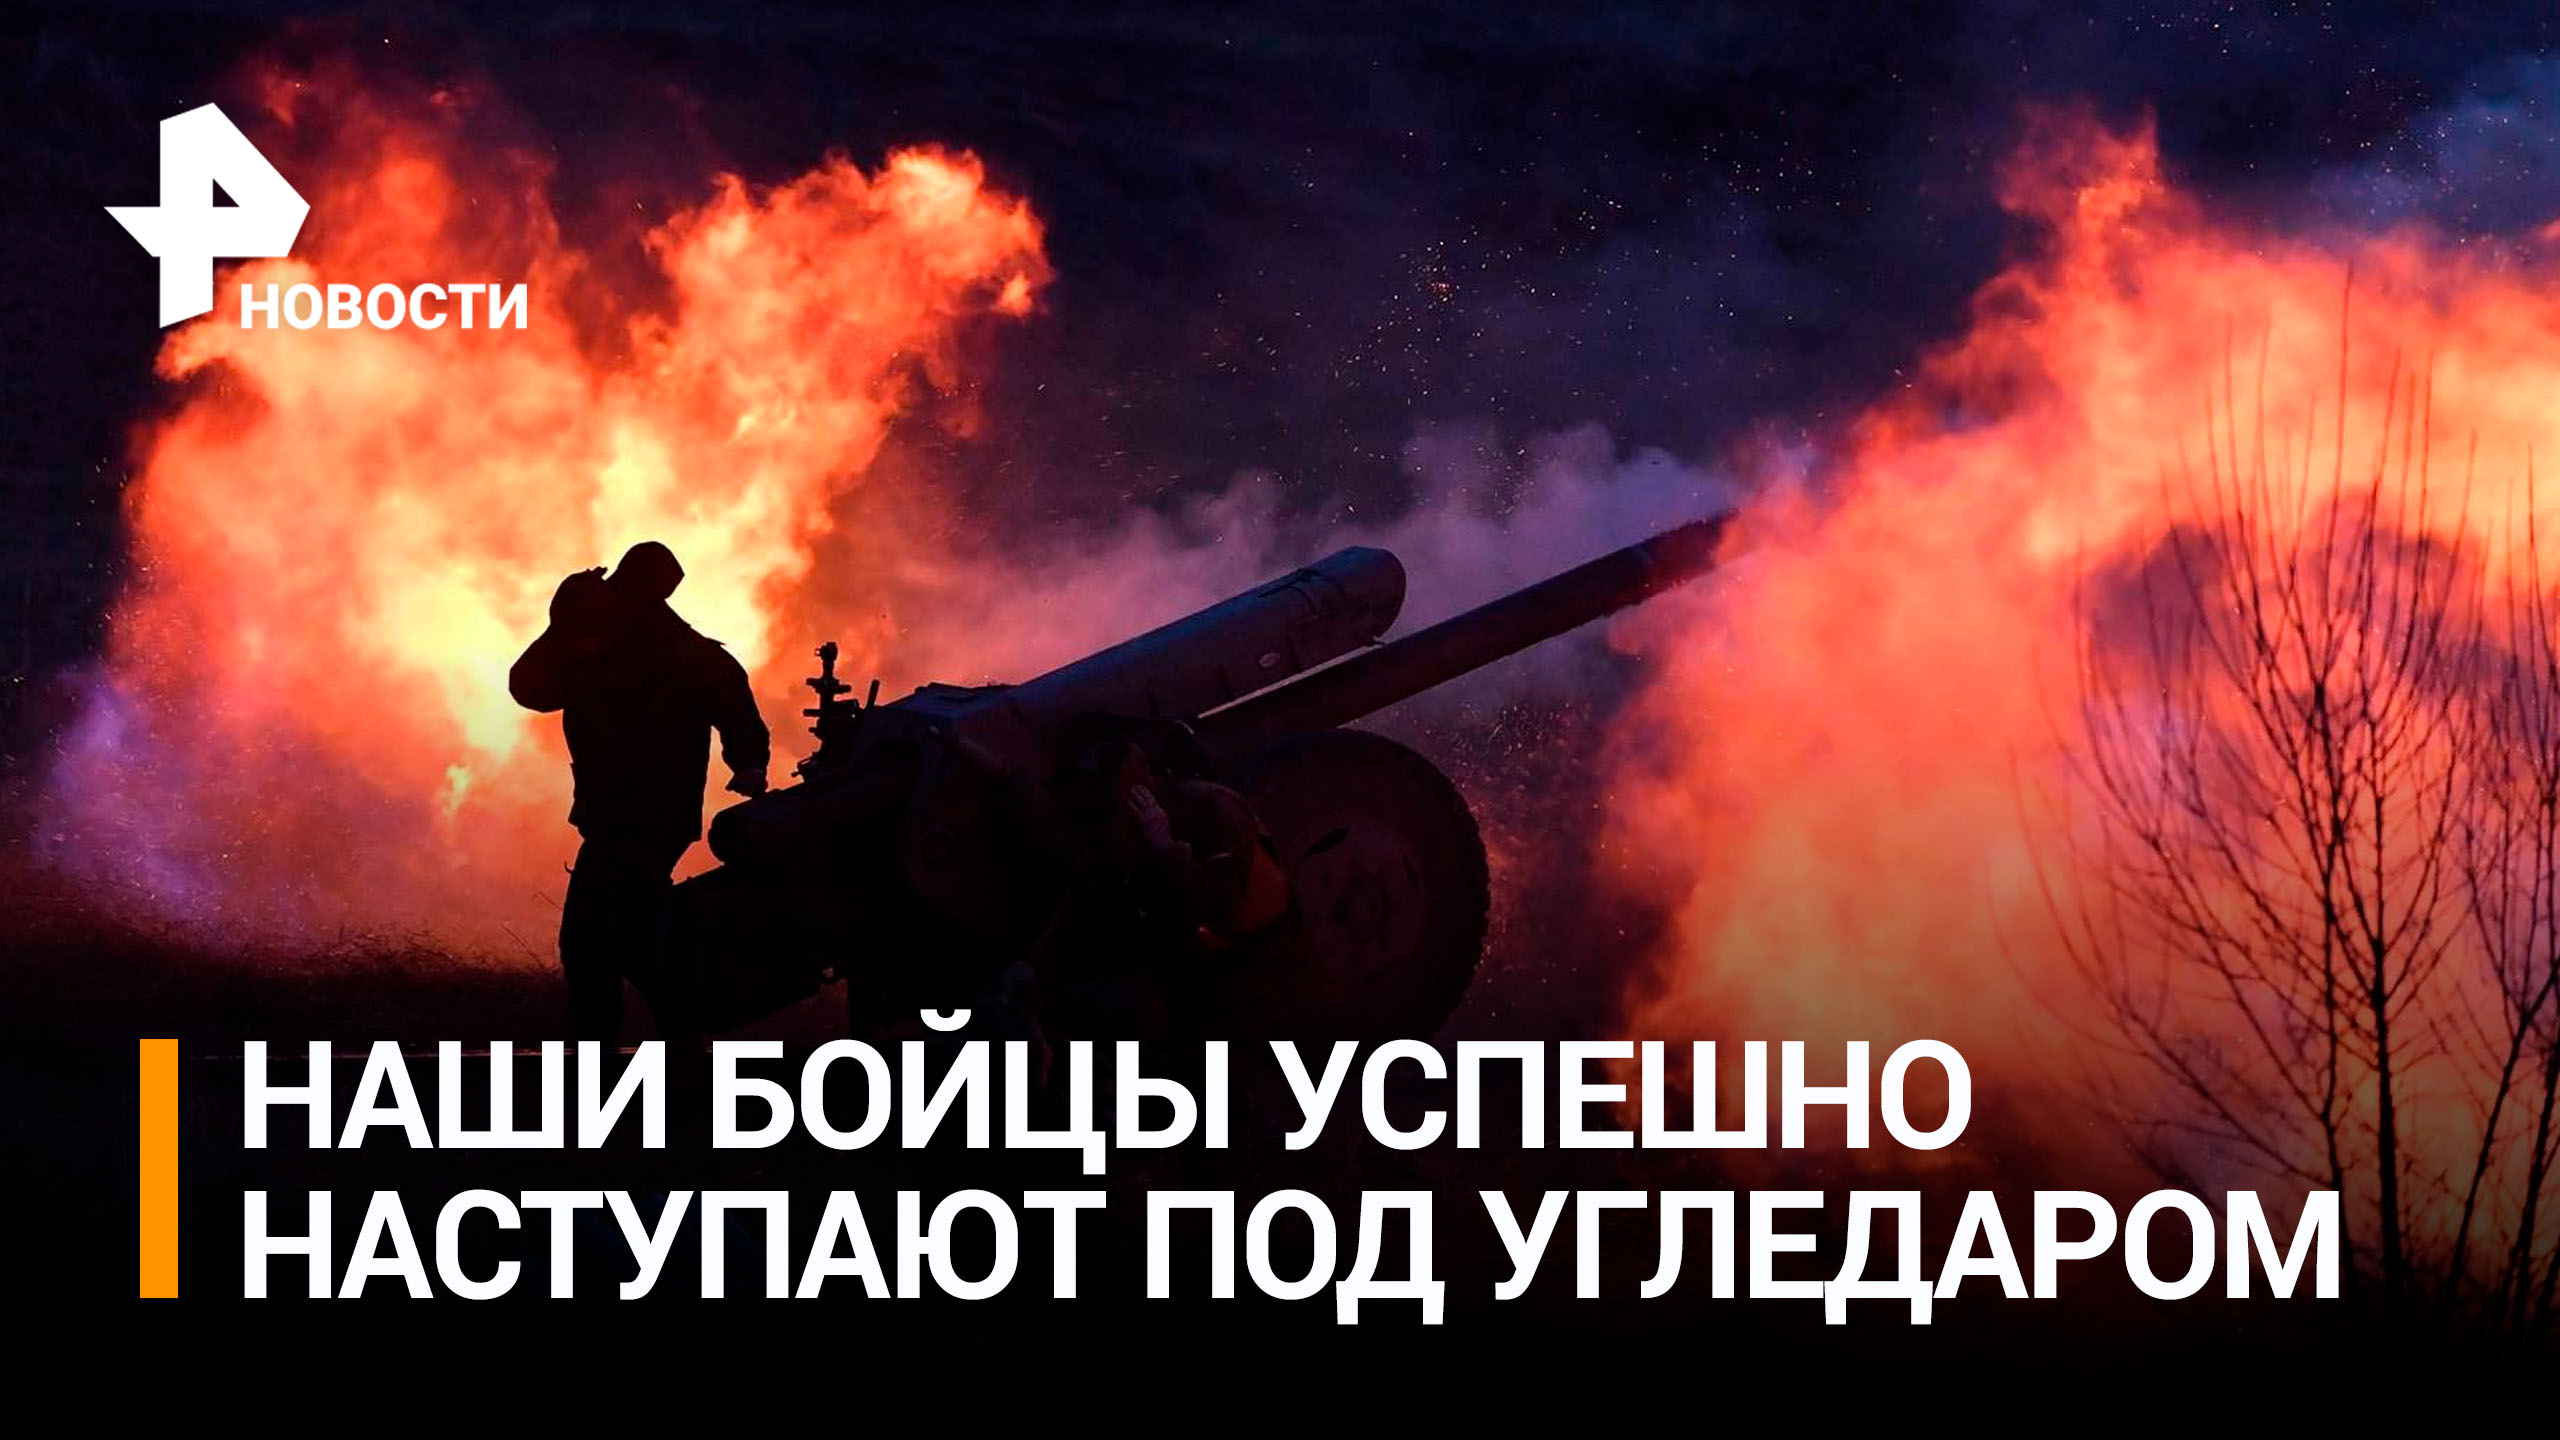 Российские военные успешно наступают на Угледарском направлении / РЕН Новости